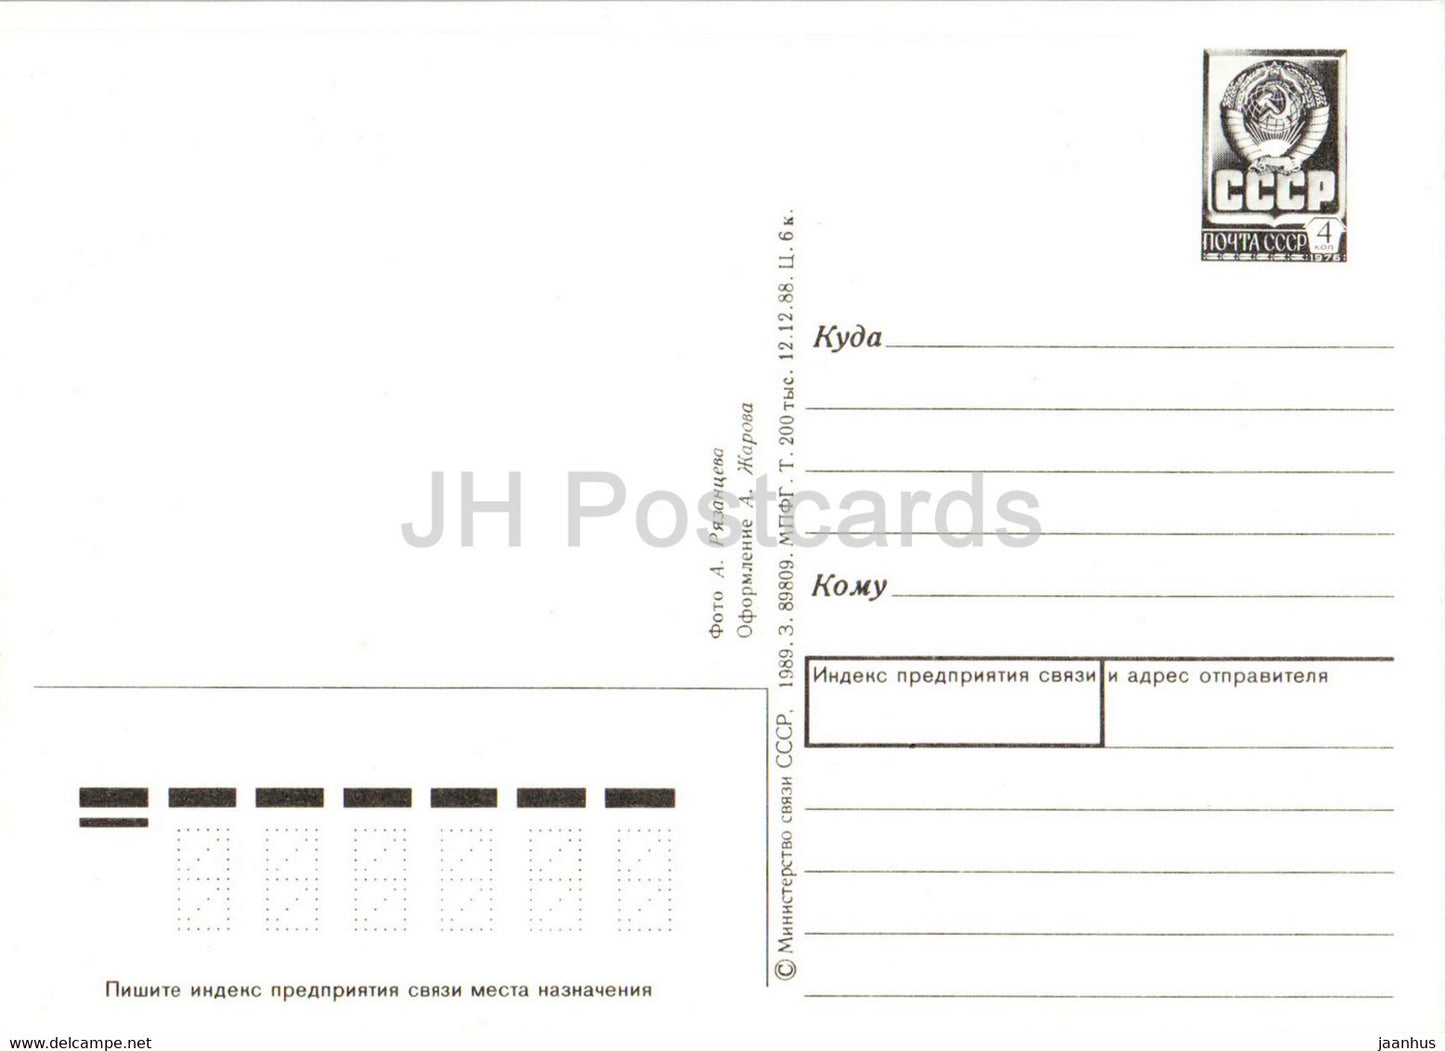 Leningrad - St Petersburg - State Hermitage - Jupiter Hall - postal stationery - 1989 - Russia USSR - unused